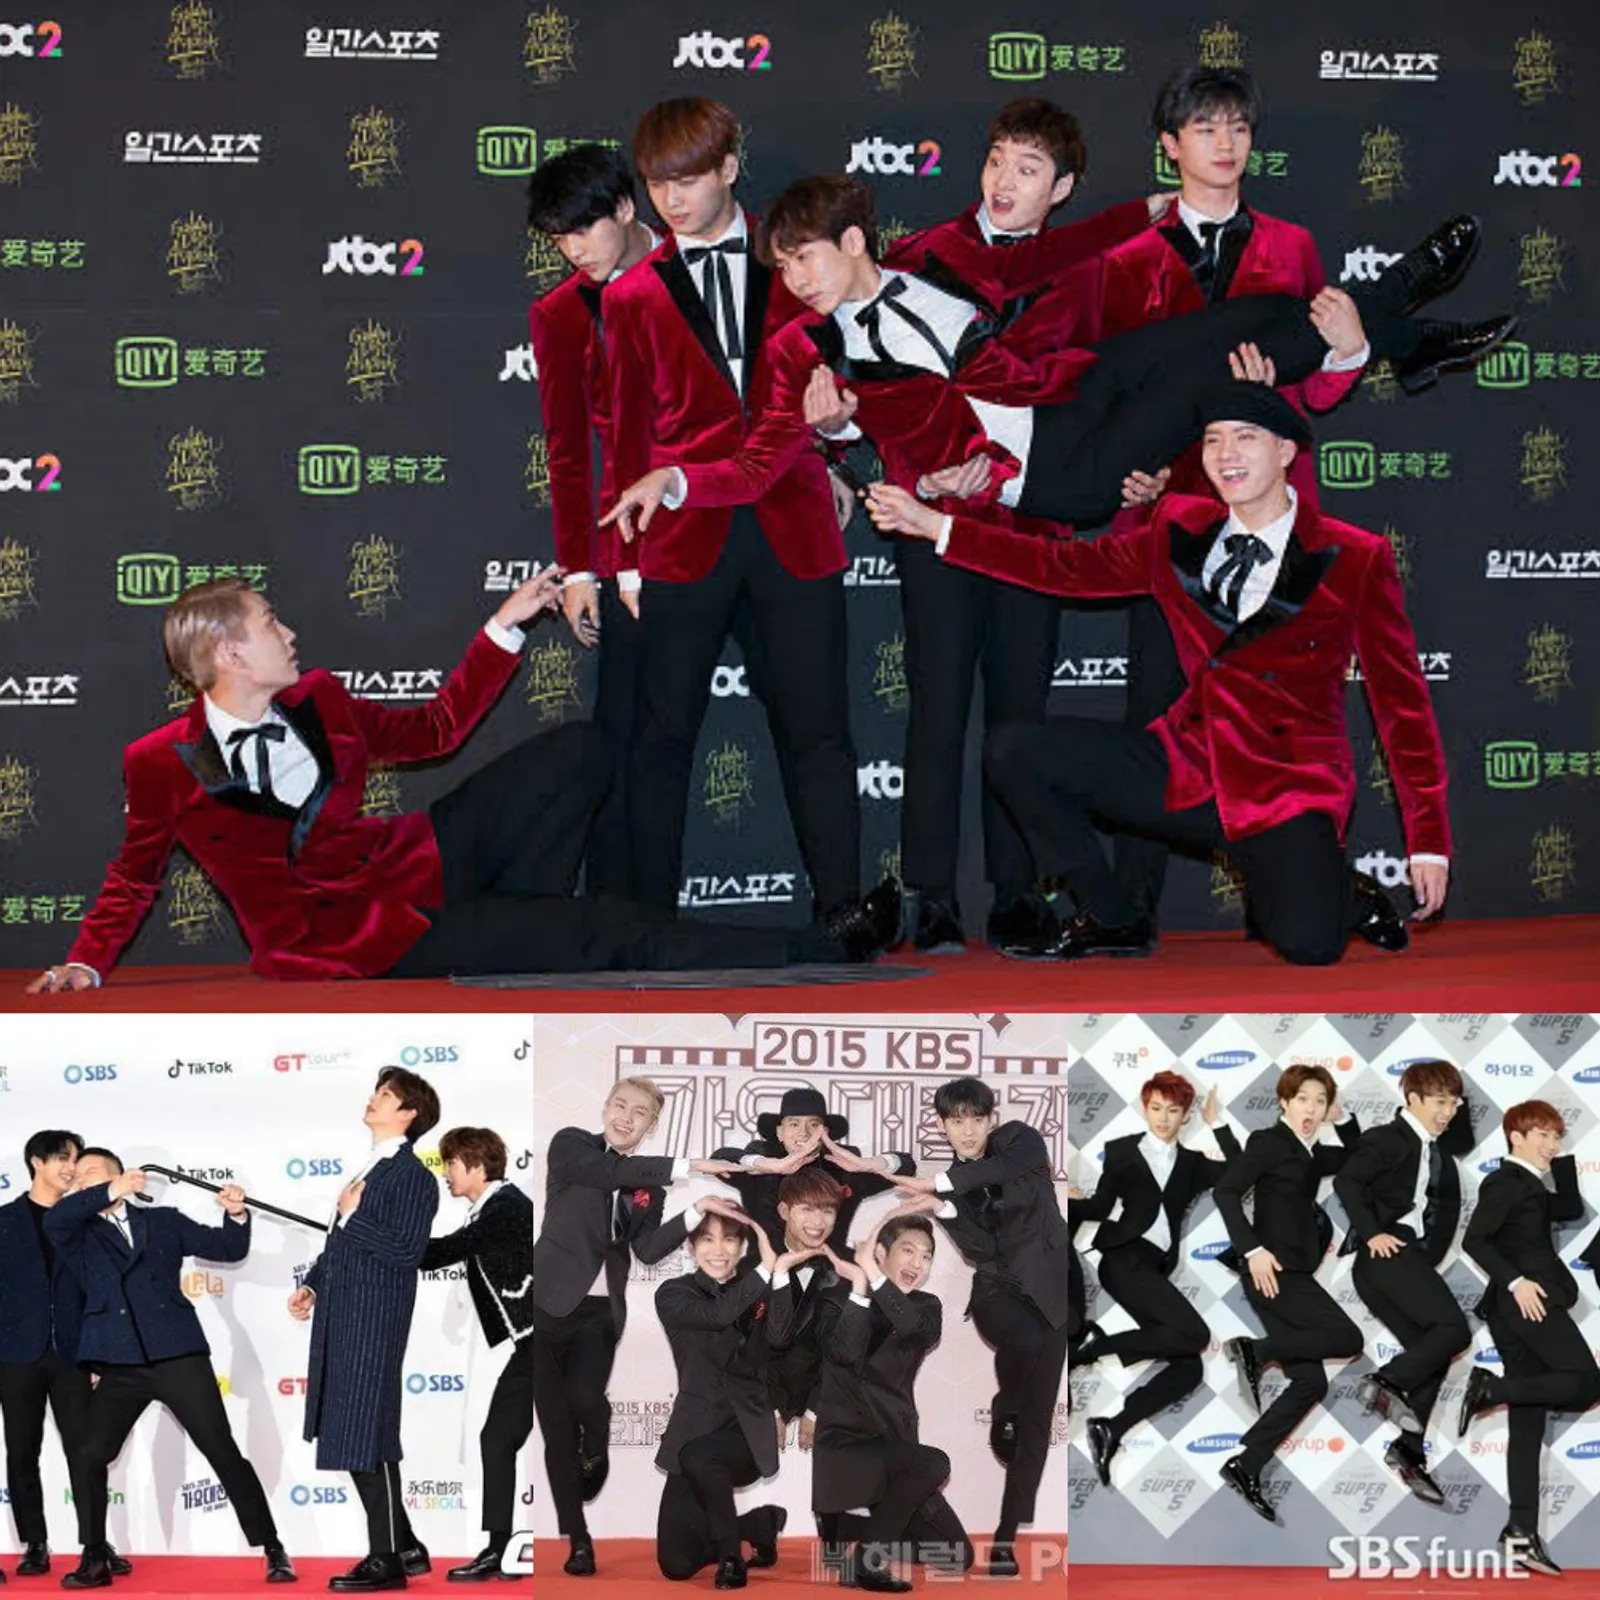 Profil dan Perjalanan Karier BTOB, Grup K-Pop dengan Segudang Bakat